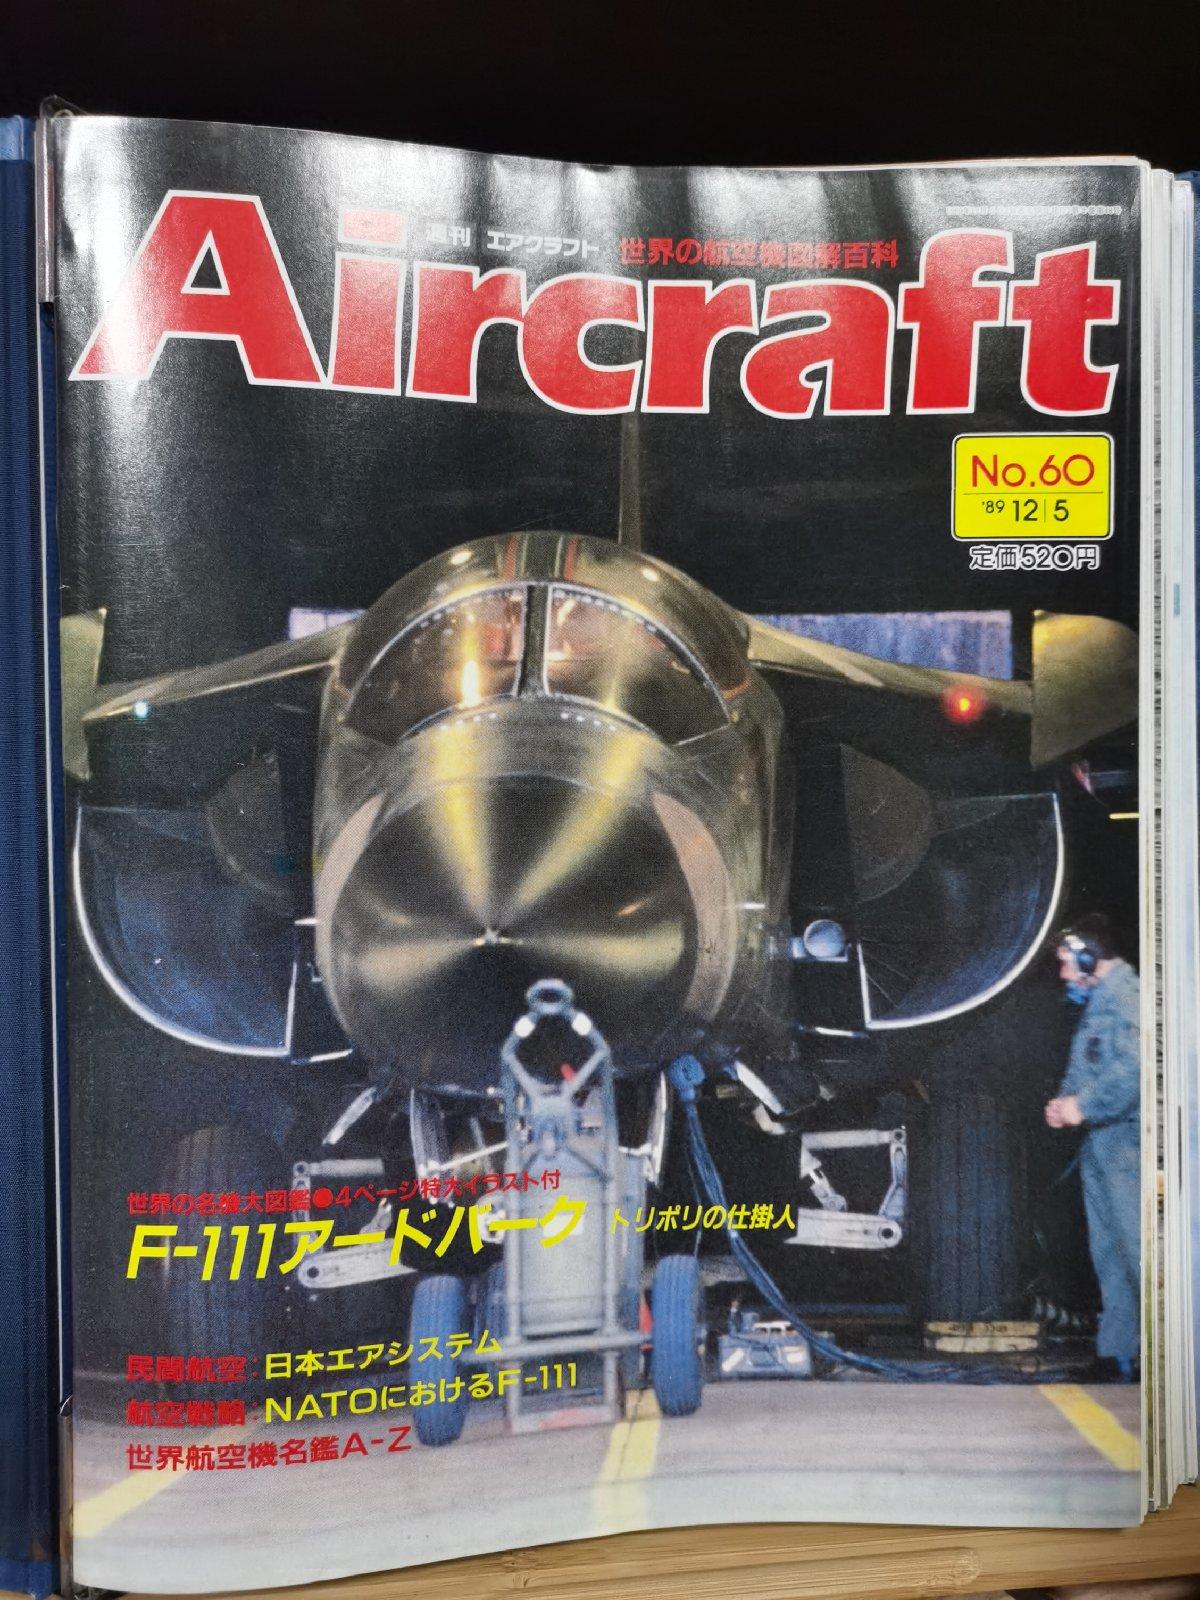 Aircraft Global Aircraft Illustrated Encyclopedia No.060 F-111